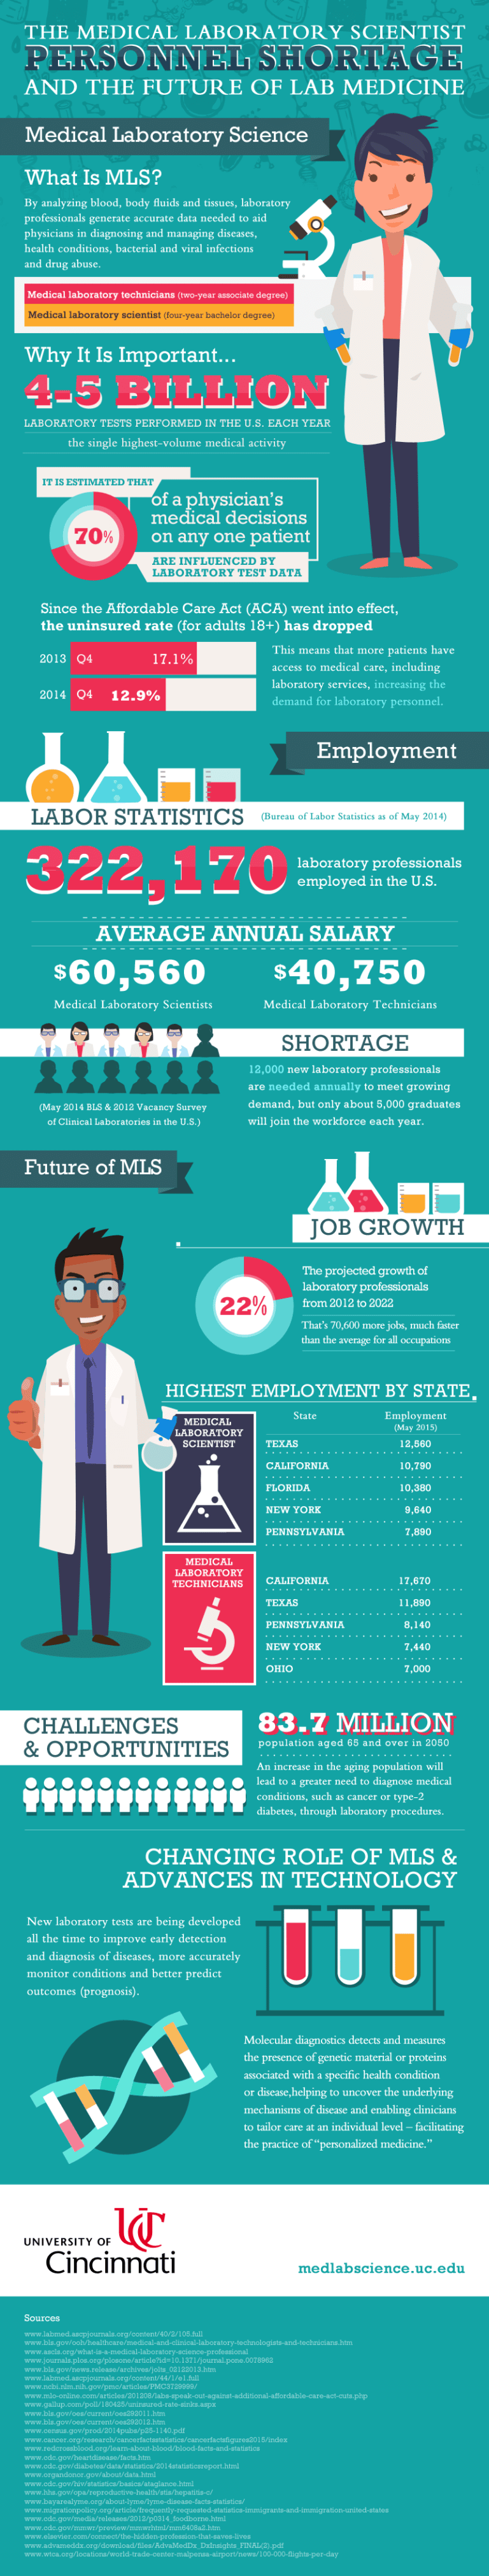 medical lab scientist shortage